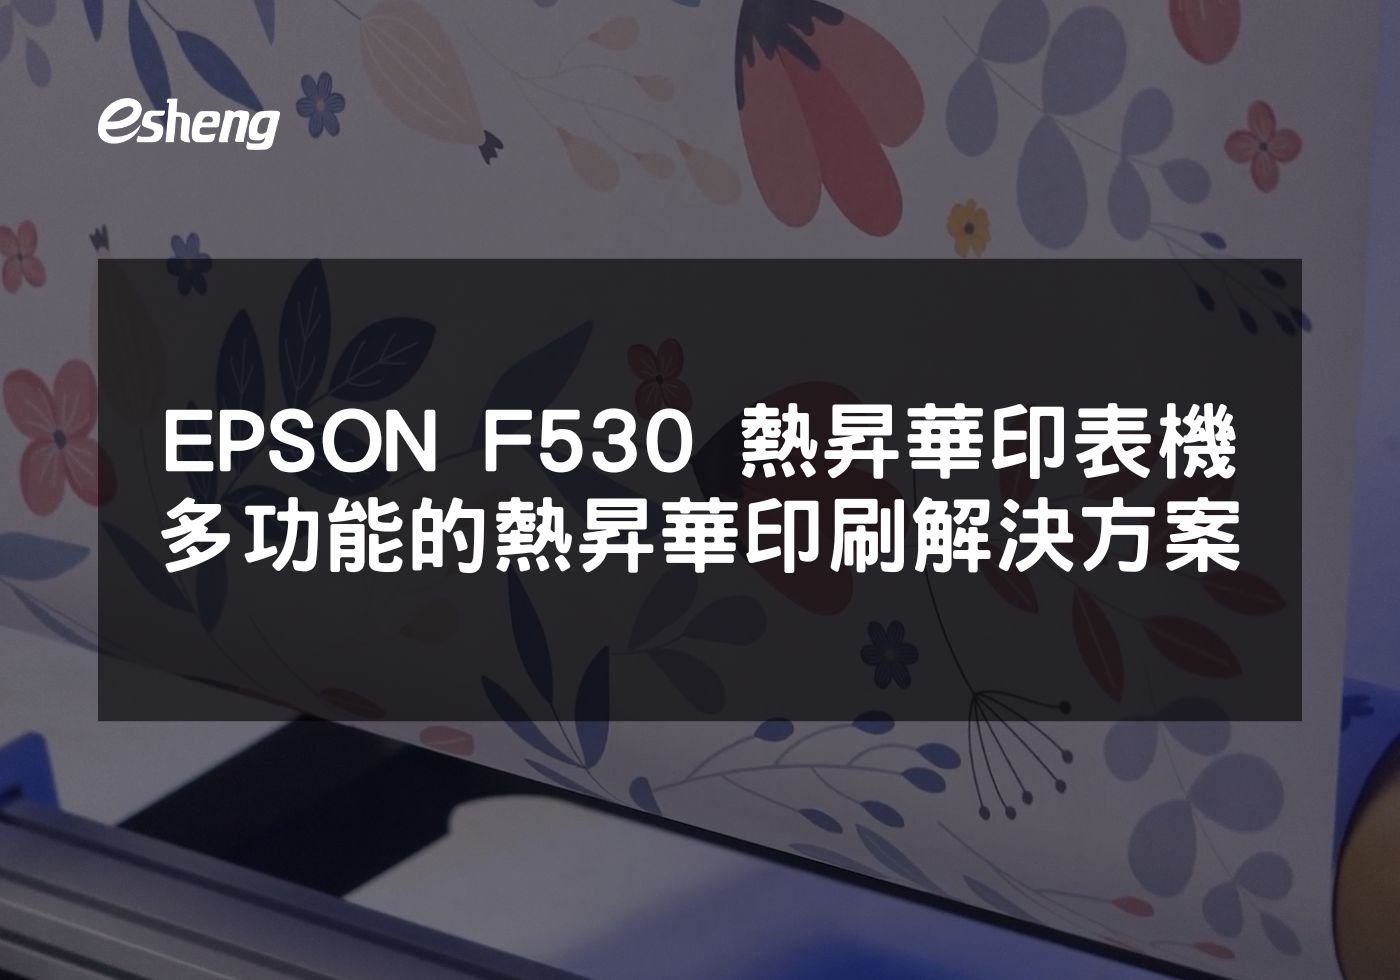 閱讀更多文章 EPSON F530 熱昇華印表機 高效多功能的熱昇華印刷解決方案